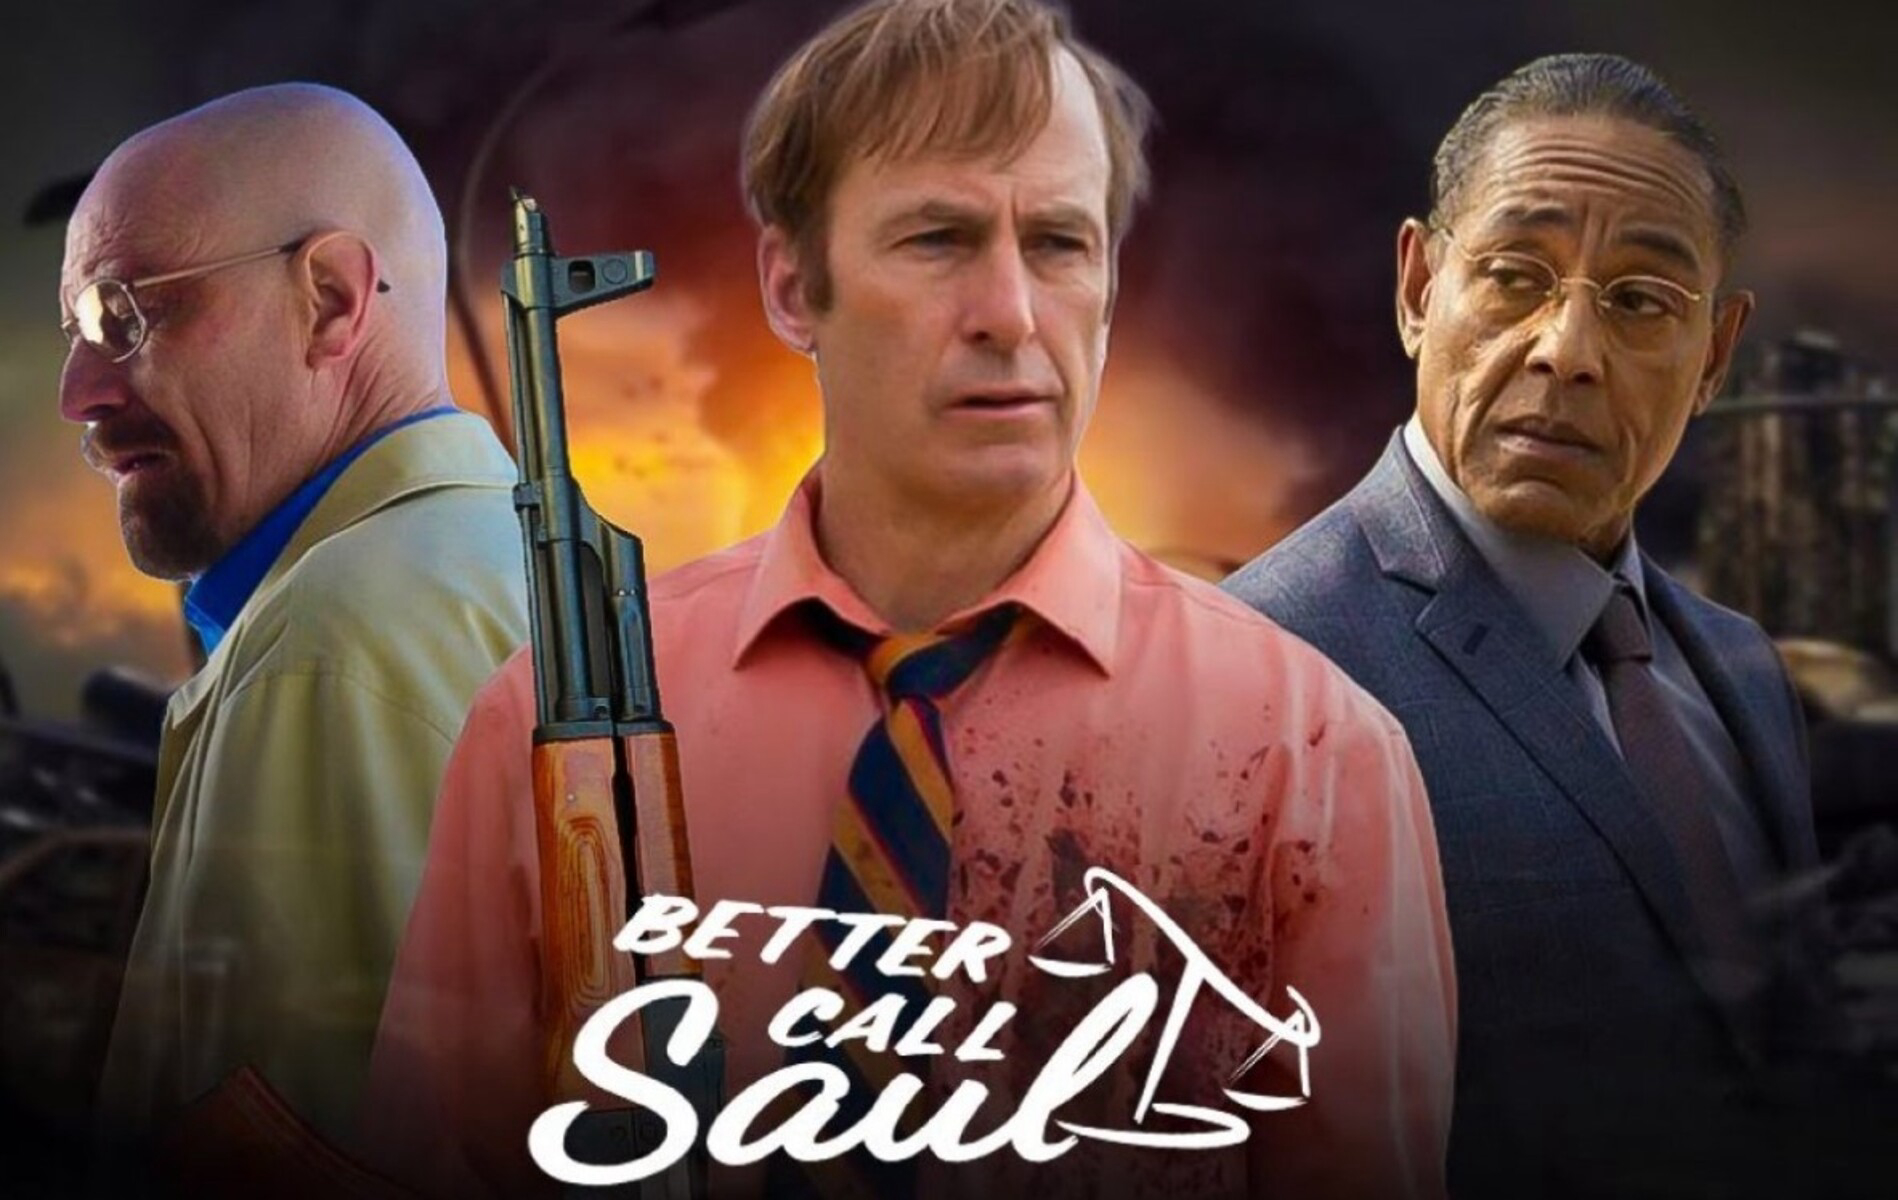 Xem Phim Hãy Gọi Cho Saul (Phần 6) (Better Call Saul (Season 6))